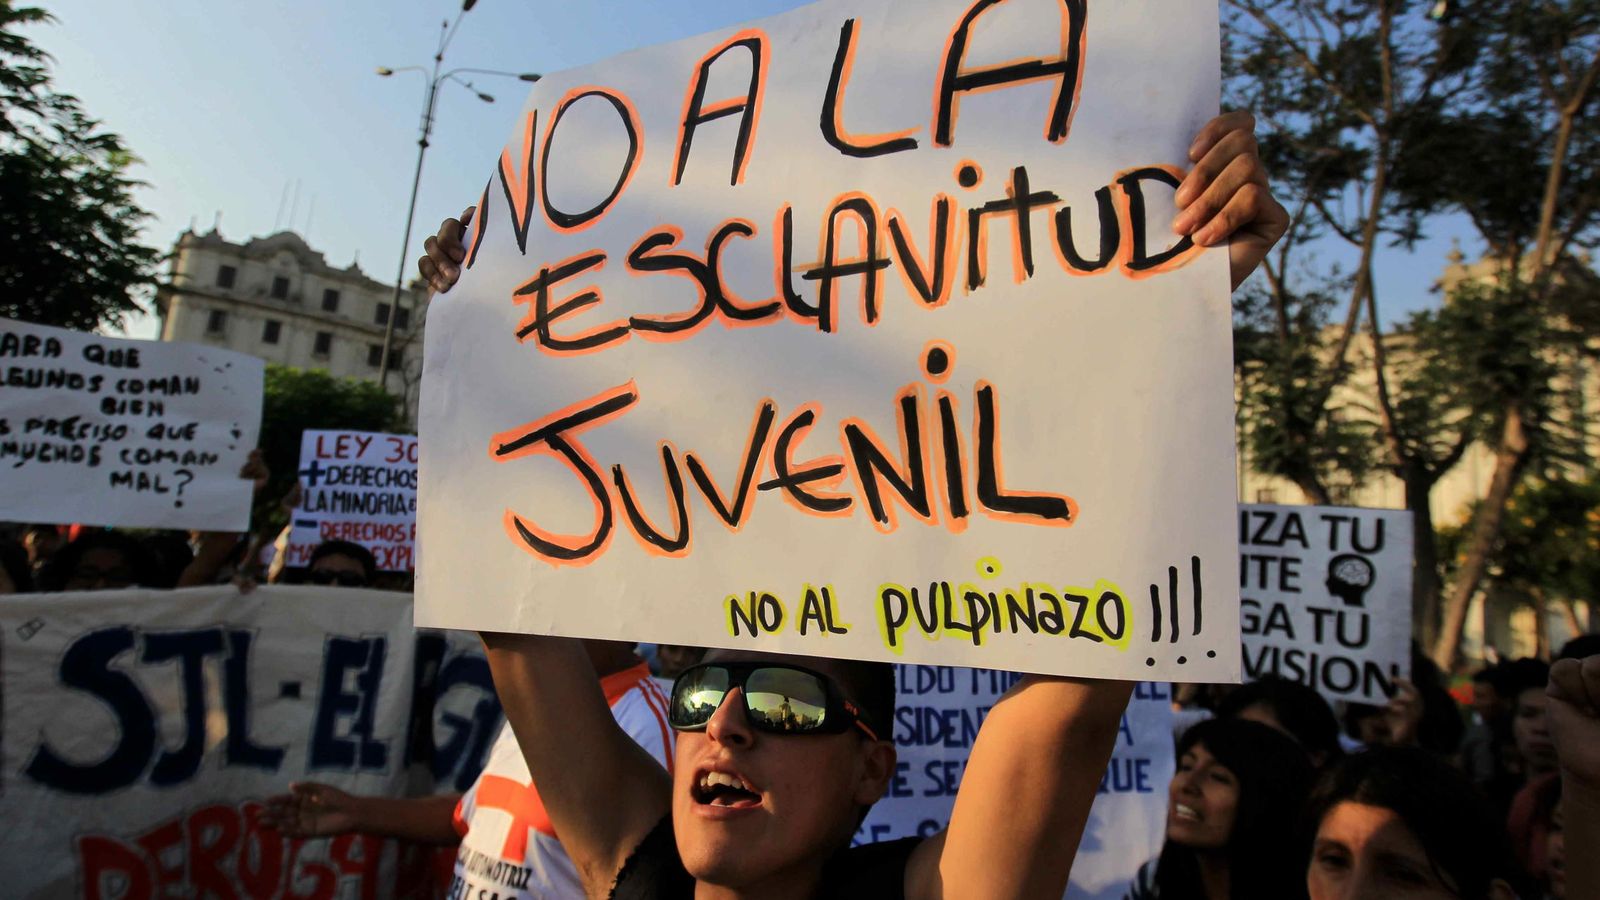 Foto: Imagen de archivo de una manifestación en Lima, Perú, pidiendo derechos para los trabajadores jóvenes (EFE)